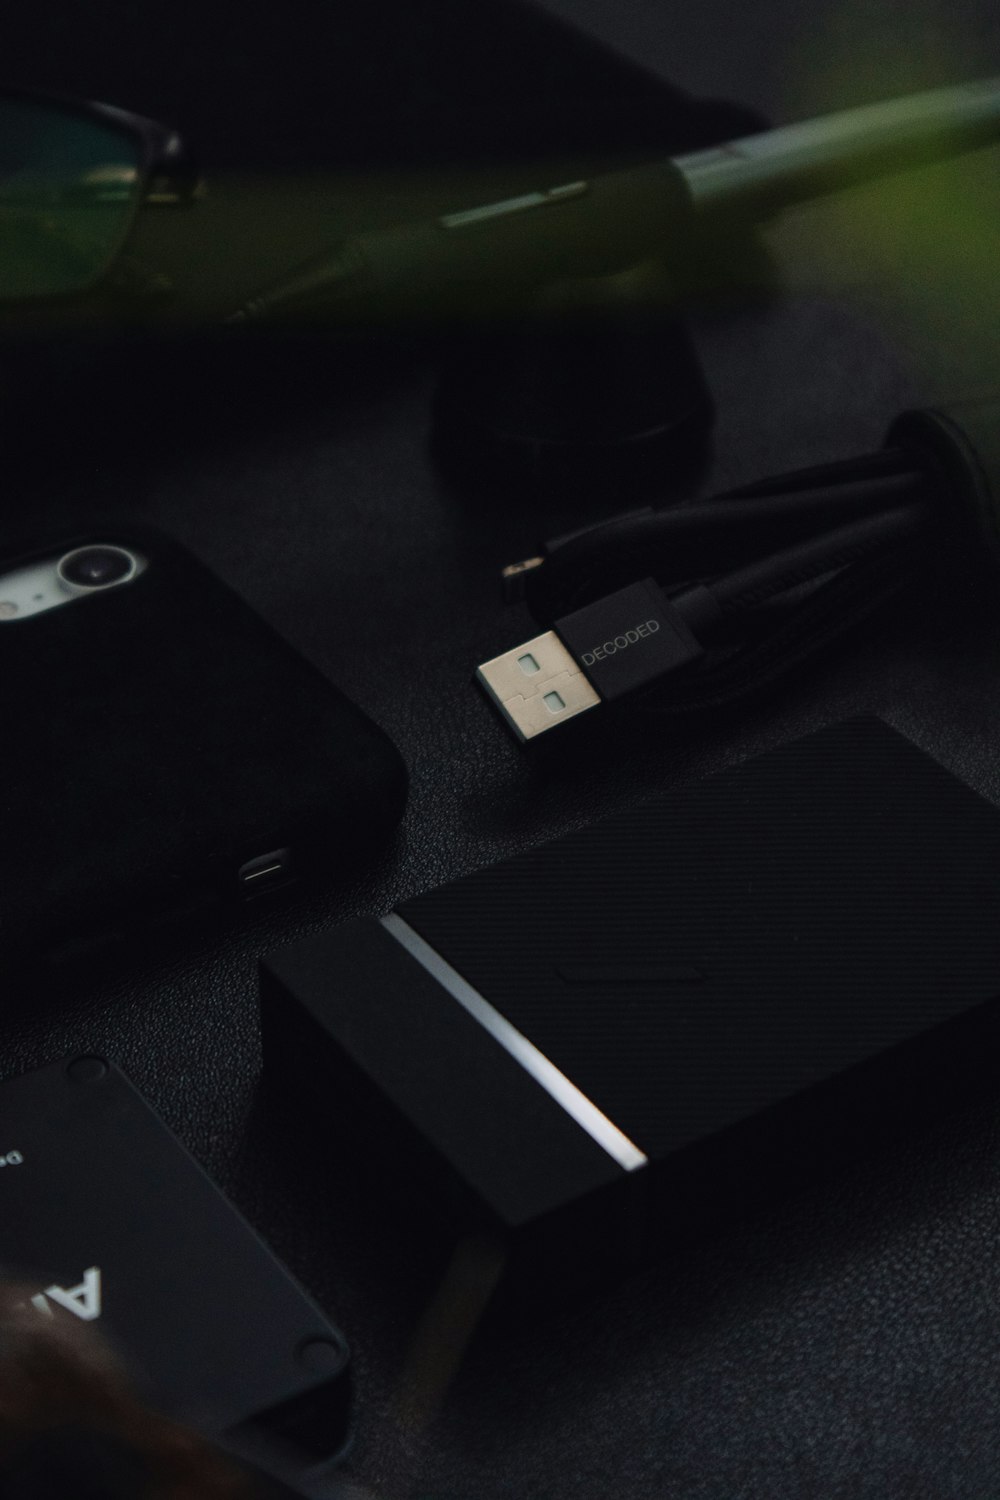 iPhone 5 C noir sur table noire